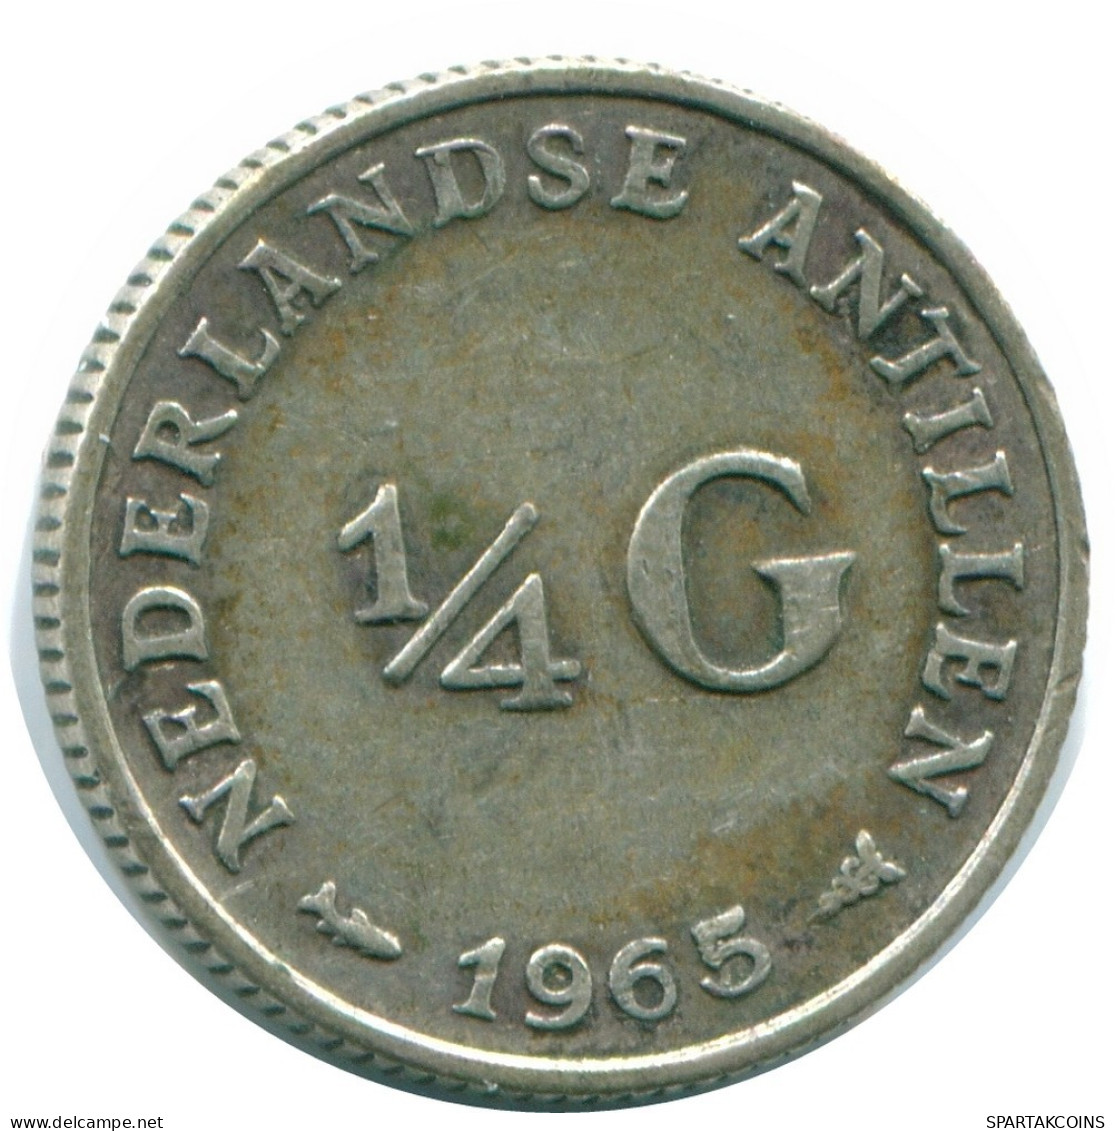 1/4 GULDEN 1965 NIEDERLÄNDISCHE ANTILLEN SILBER Koloniale Münze #NL11339.4.D.A - Nederlandse Antillen